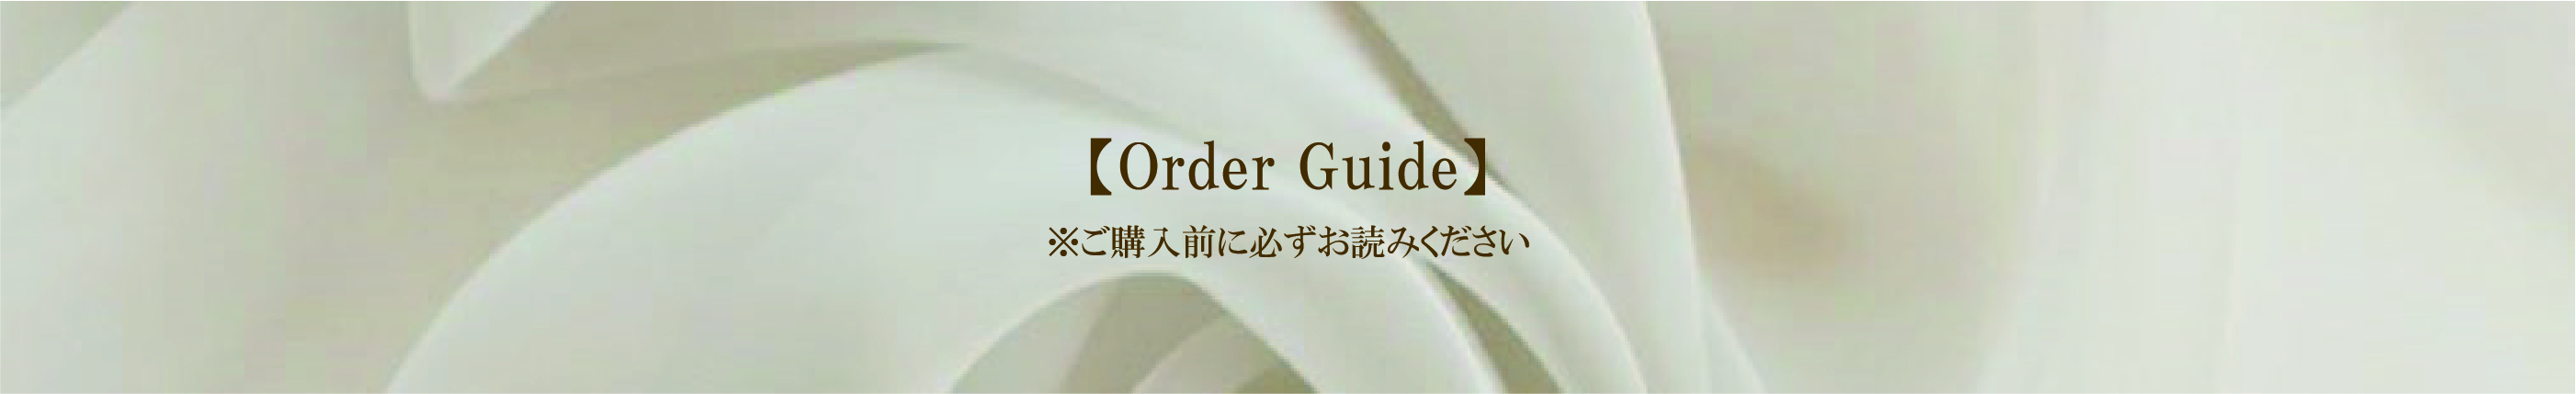 ご購入前に必ず【OrderGuide】をお読みください